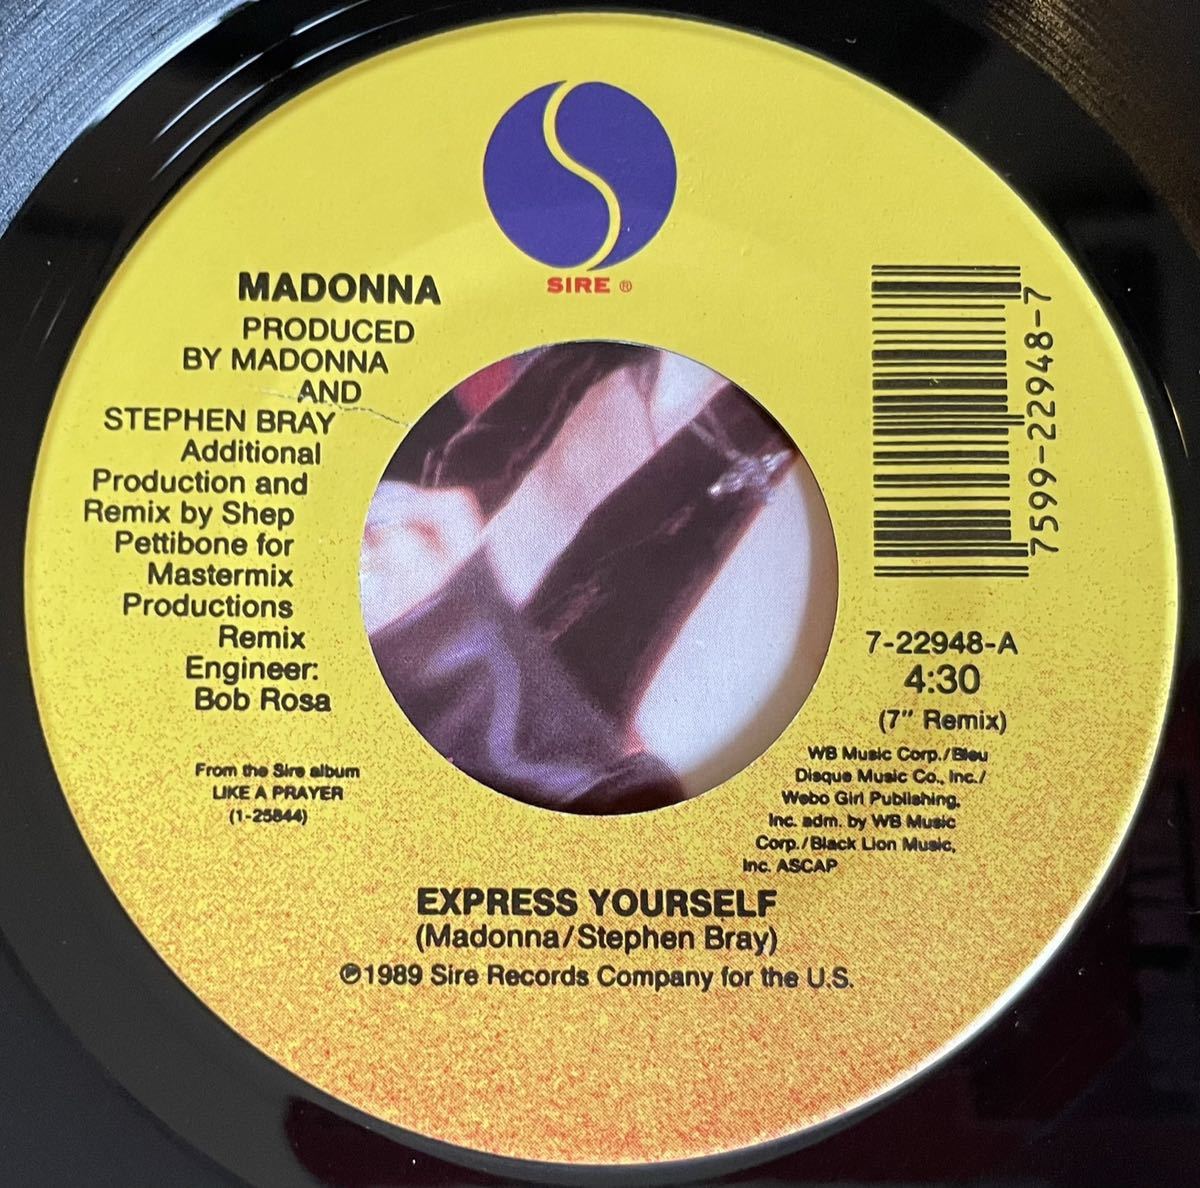 EP盤 Madonna / Express Yourself US盤 オリジナル7インチ盤その他プロモーション盤 レア盤 人気レコード 多数出品。_画像2